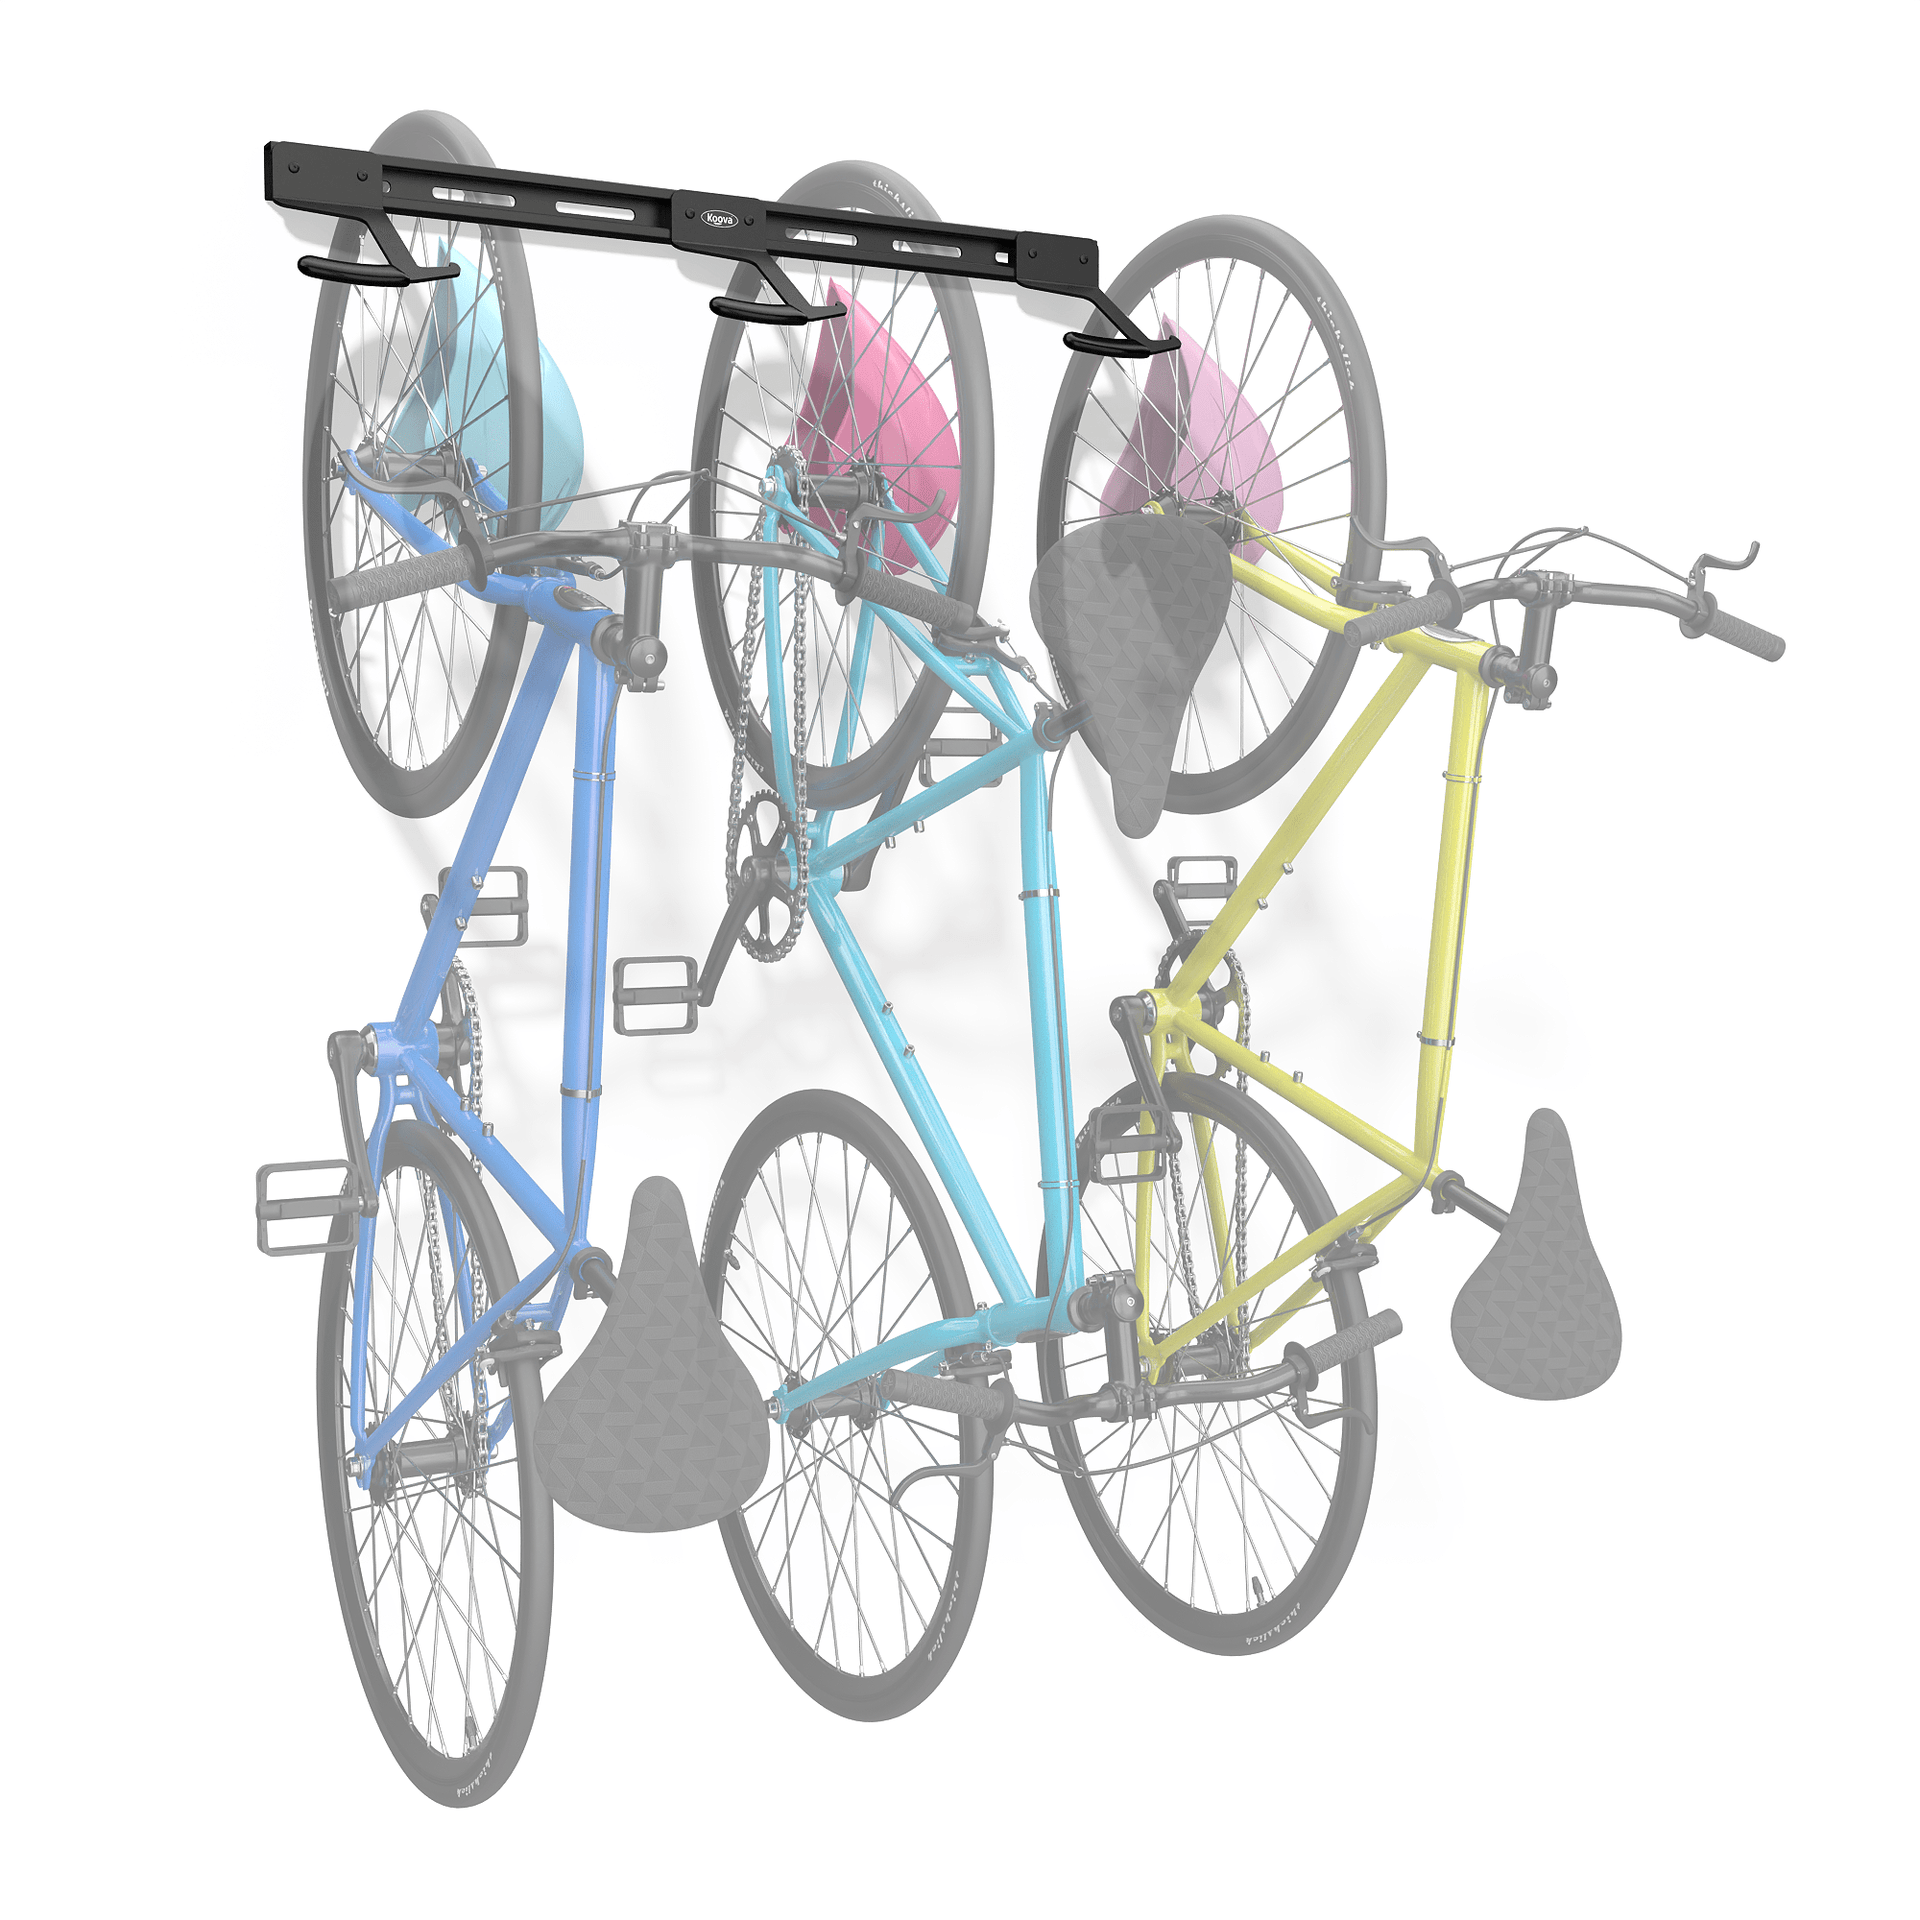 13+ Bike Rack For Ceiling